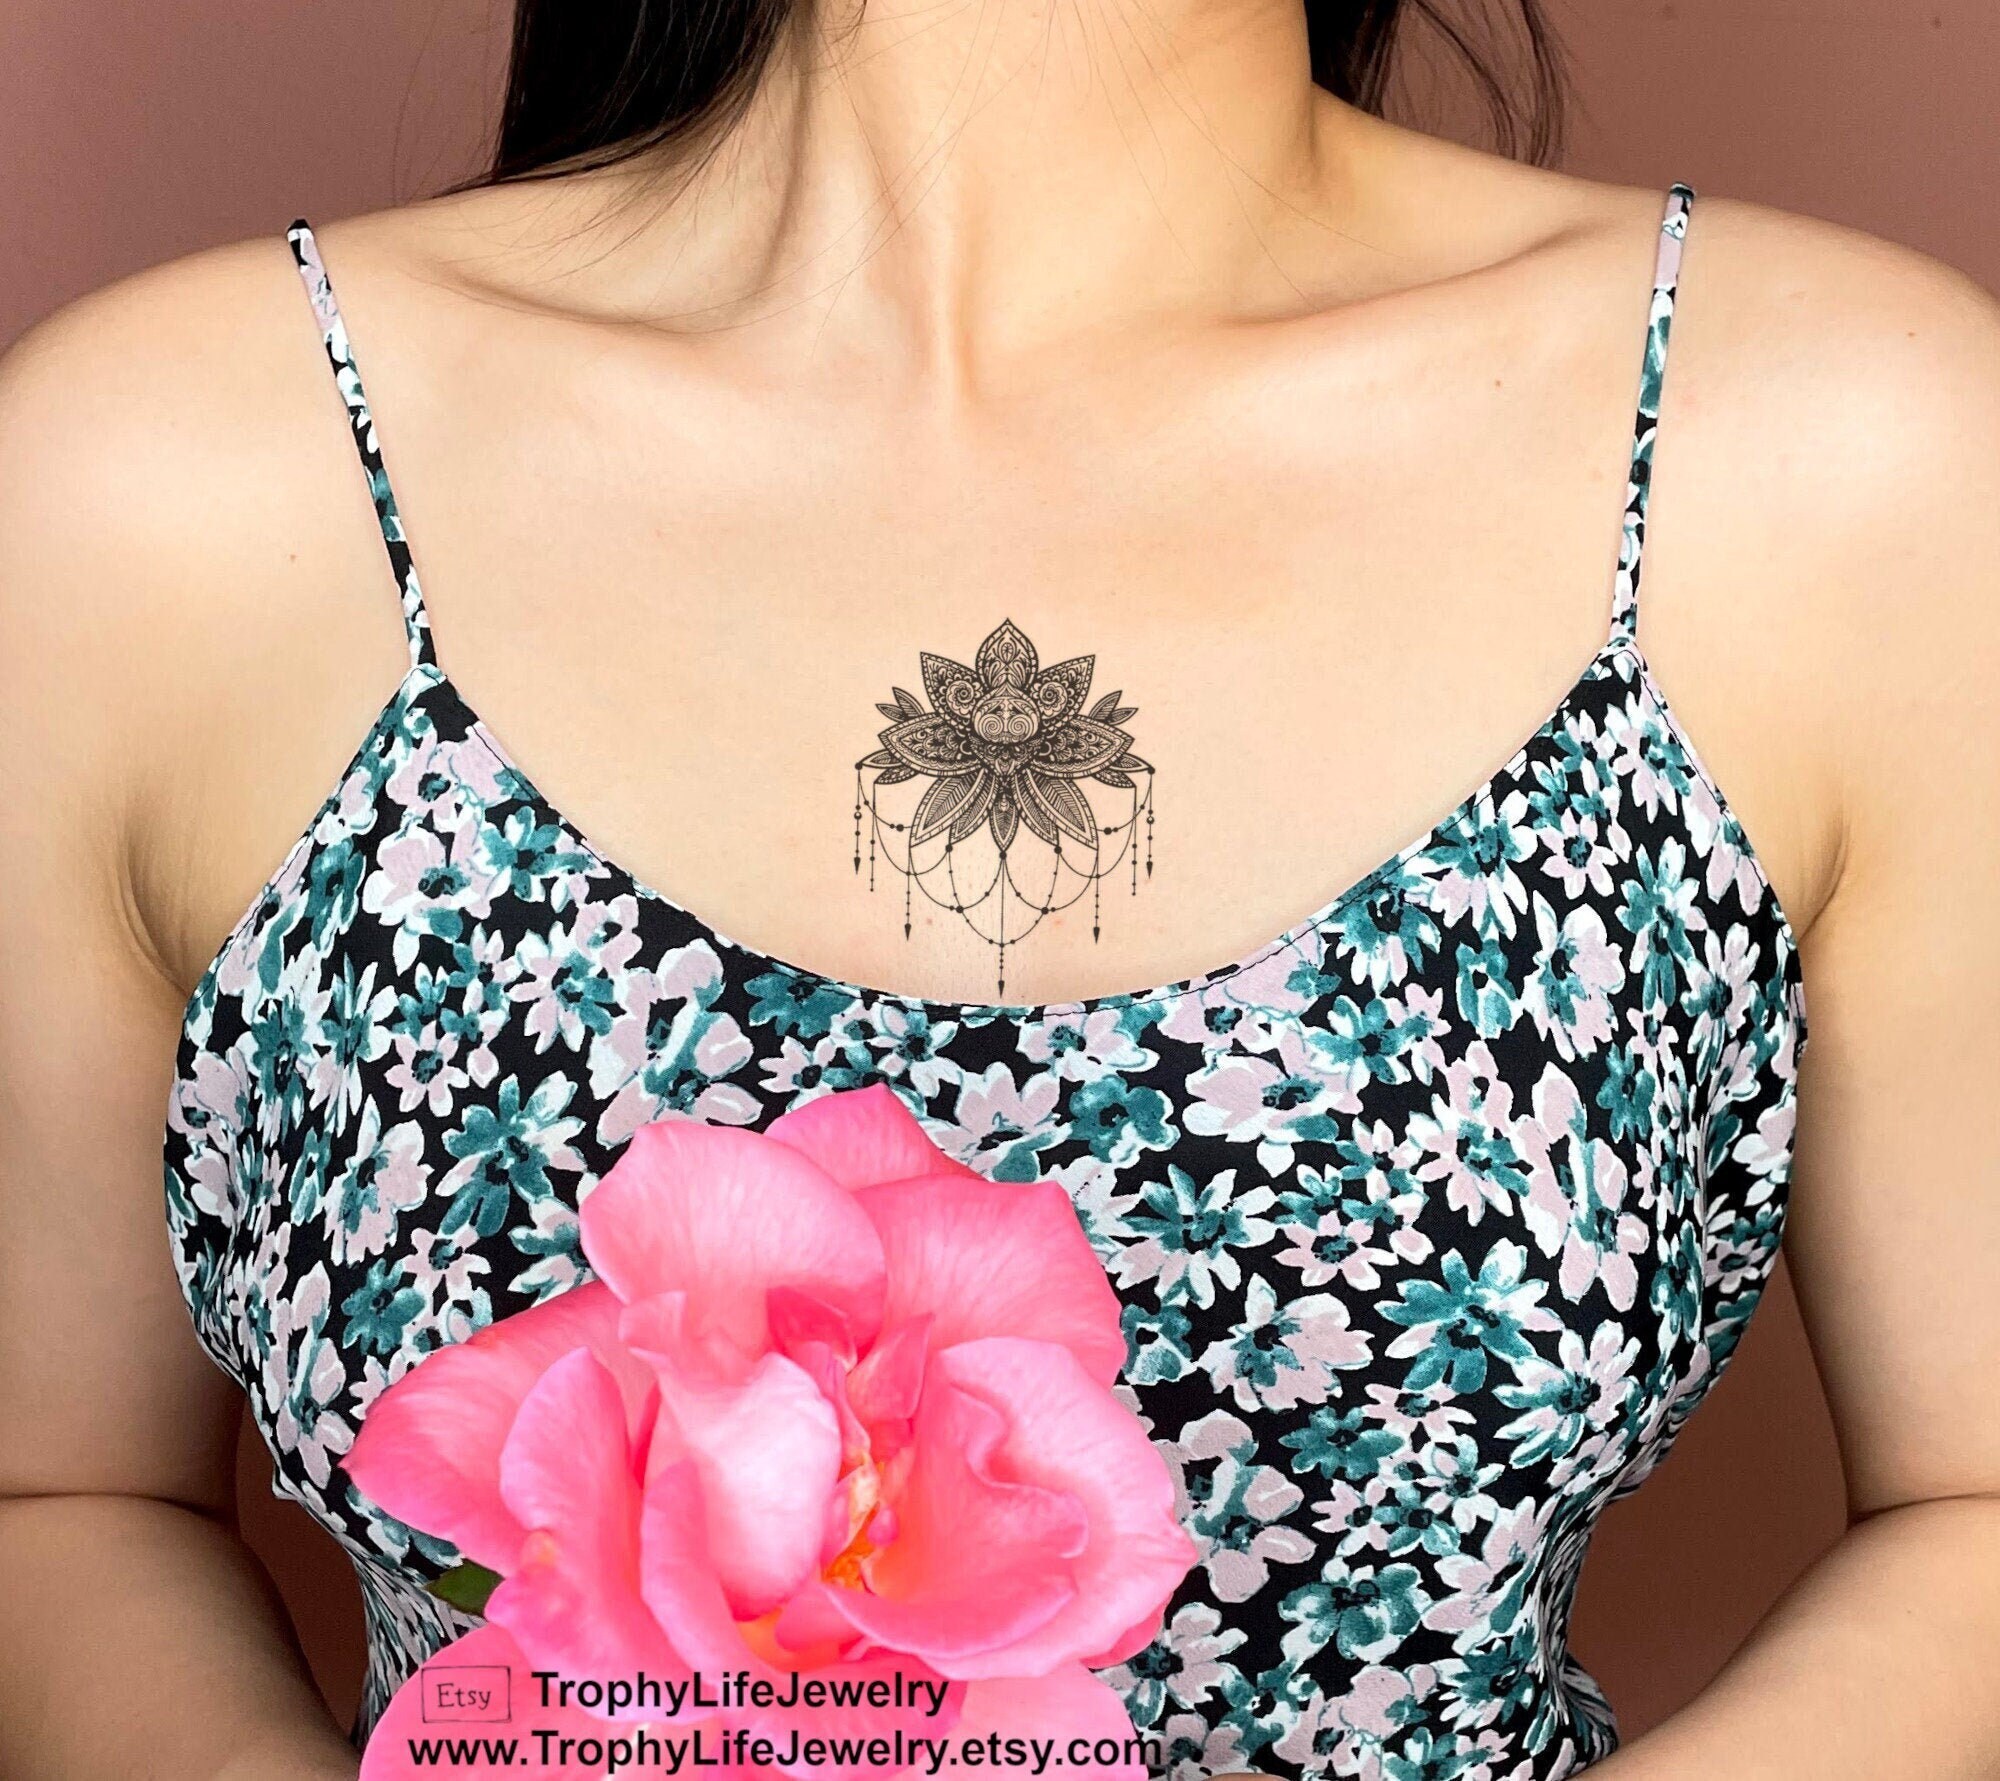 Large Geometric Underboob Mandala Temporary Tattoo – TattooIcon